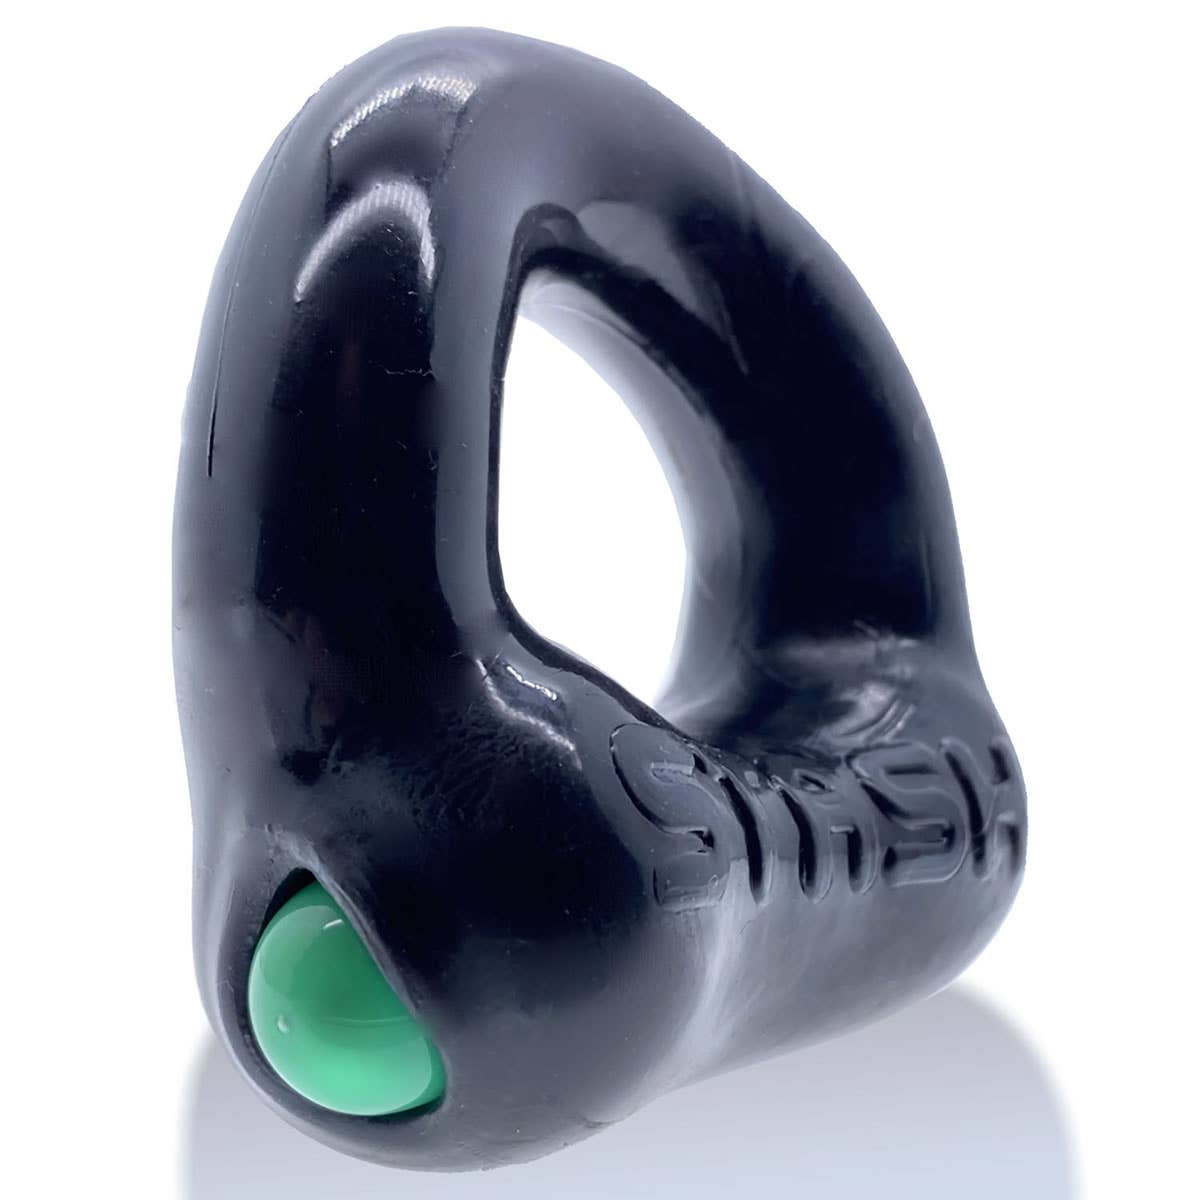 Oxballs Stash Ring With Aluminum Capsule Insert Black